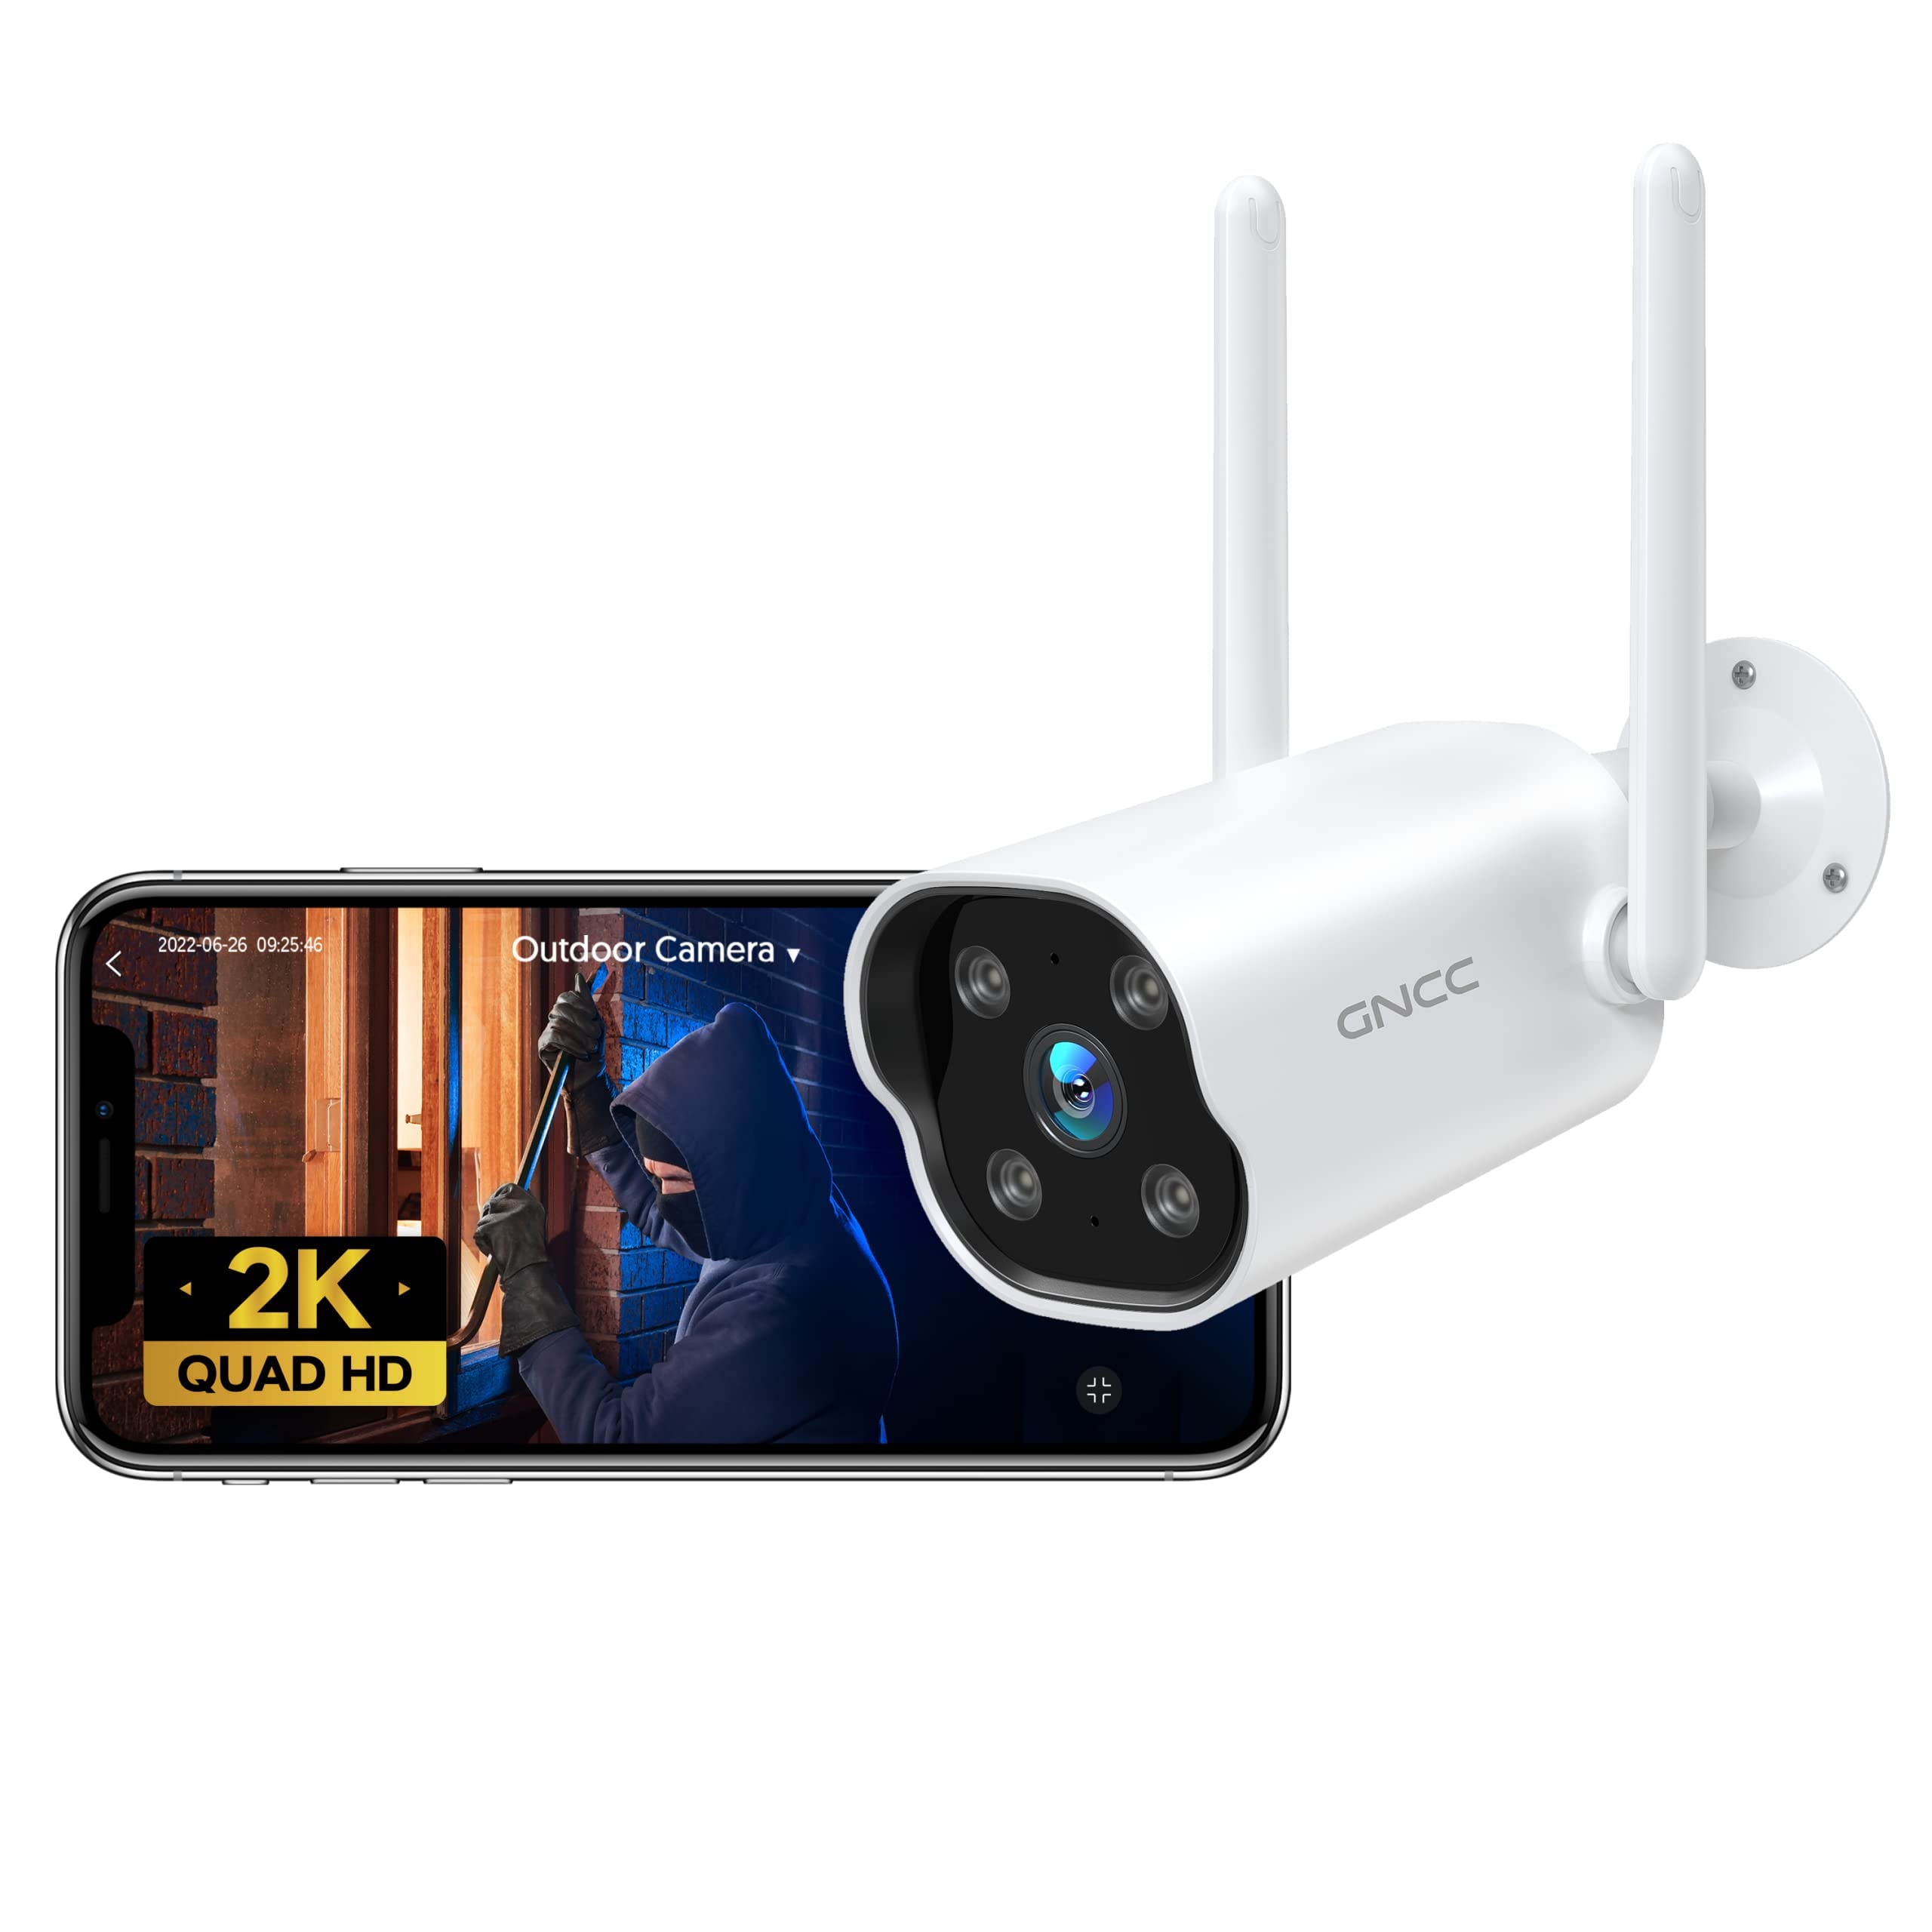 GNCC 2K Überwachungskamera Aussen mit Bewegungsalarm, Kamera Überwachung Aussen WLAN IP Kamera, Smart Bewegungs-/Geräuscherkennung, Zwei-Wege-Audio, IP65 Wetterfest, Work with iOS/Android(T1Pro)